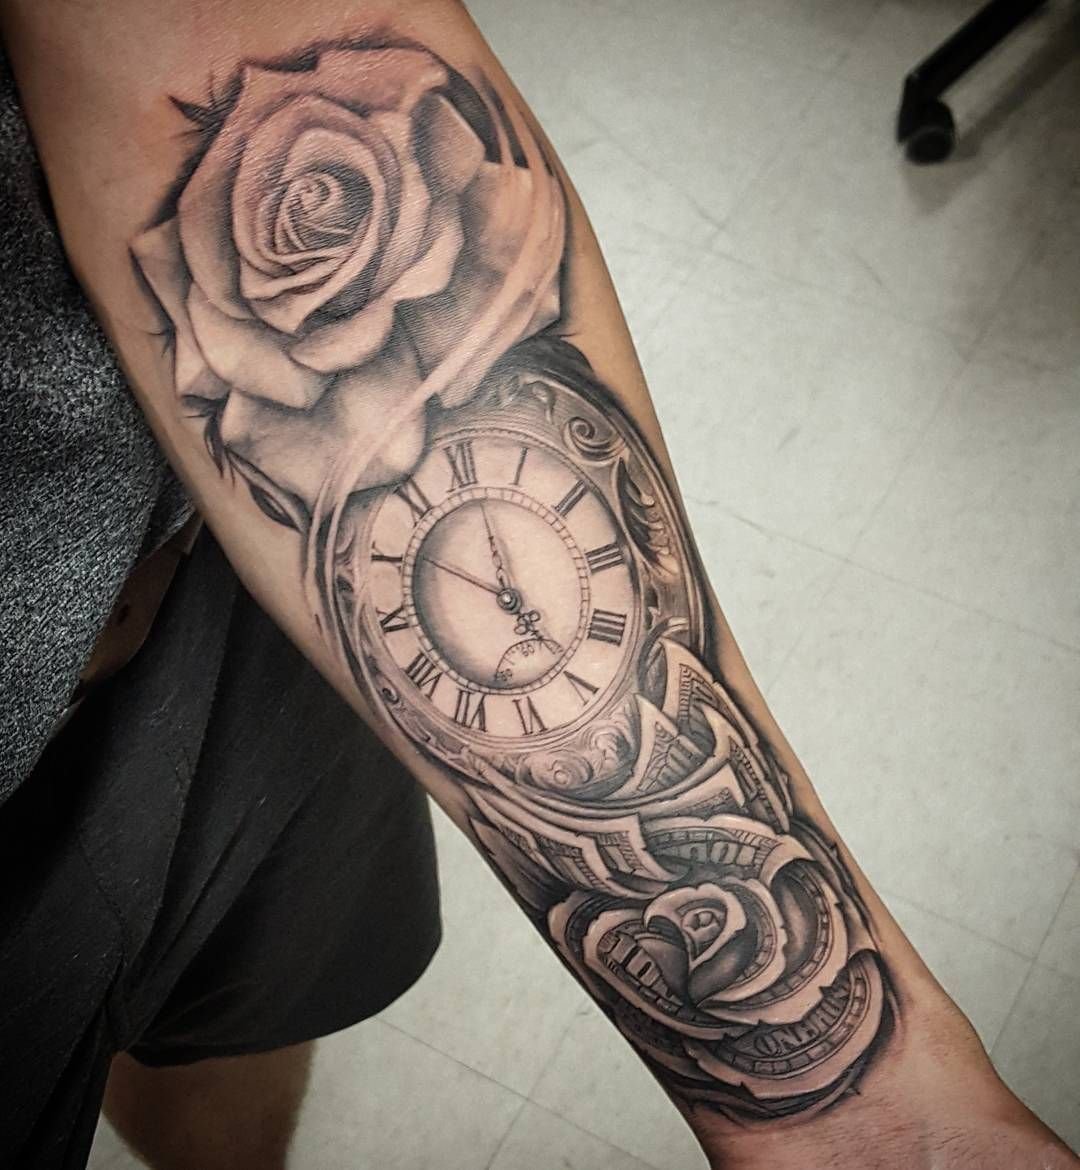 Тату на руку мужчине роза и часы